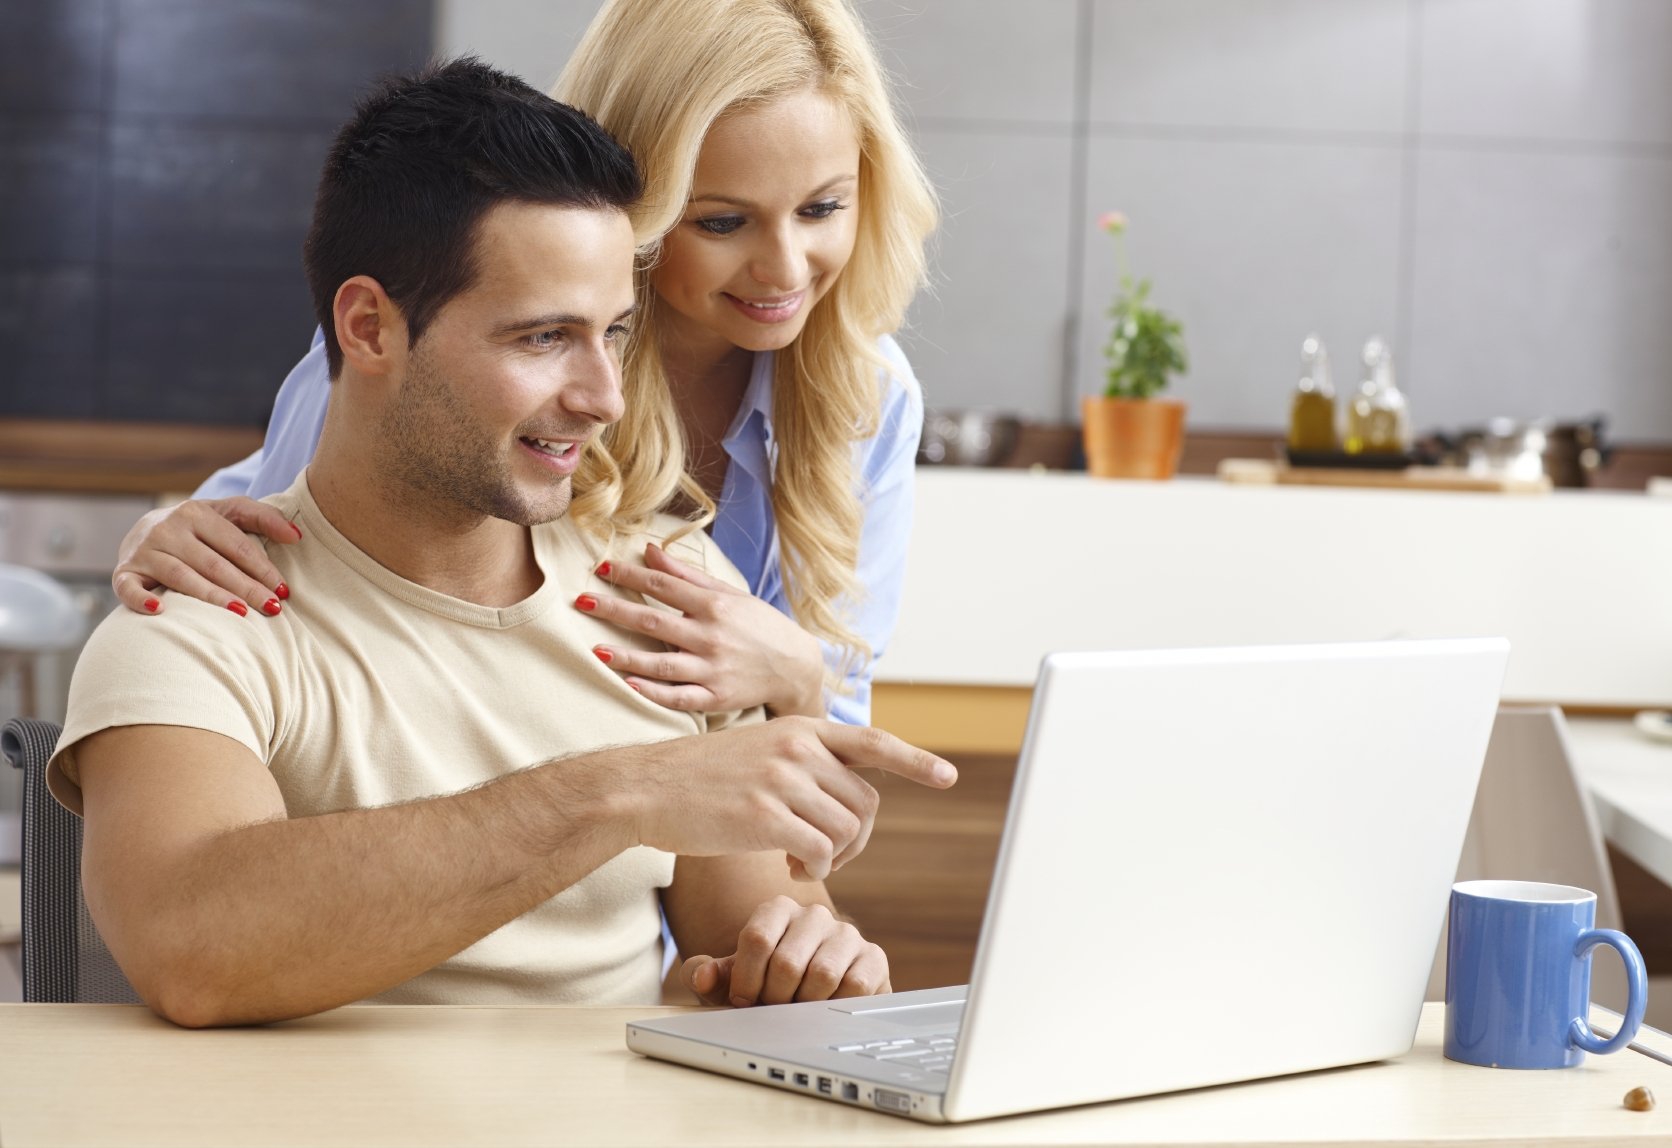 Man and woman looking at computer